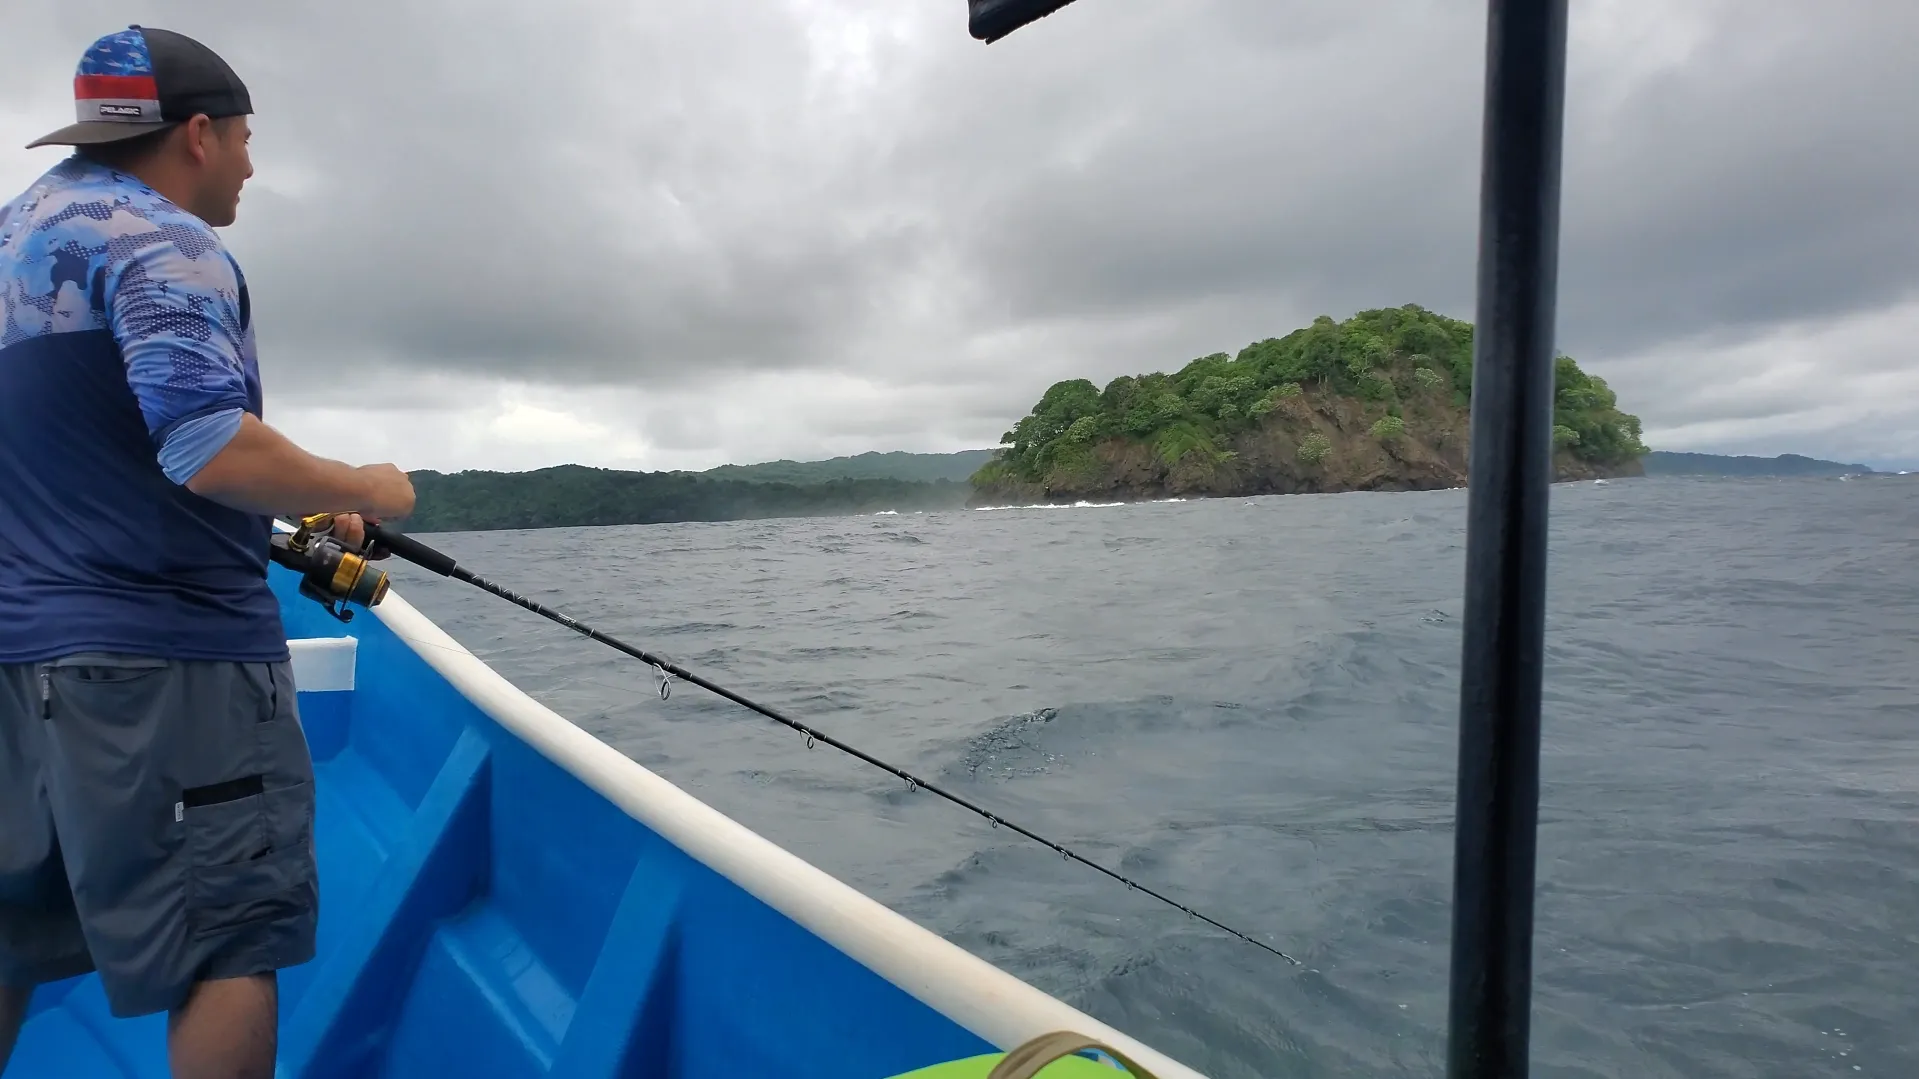 Aventuras en Isla Caleta: Capturando recuerdos inolvidables en alta mar